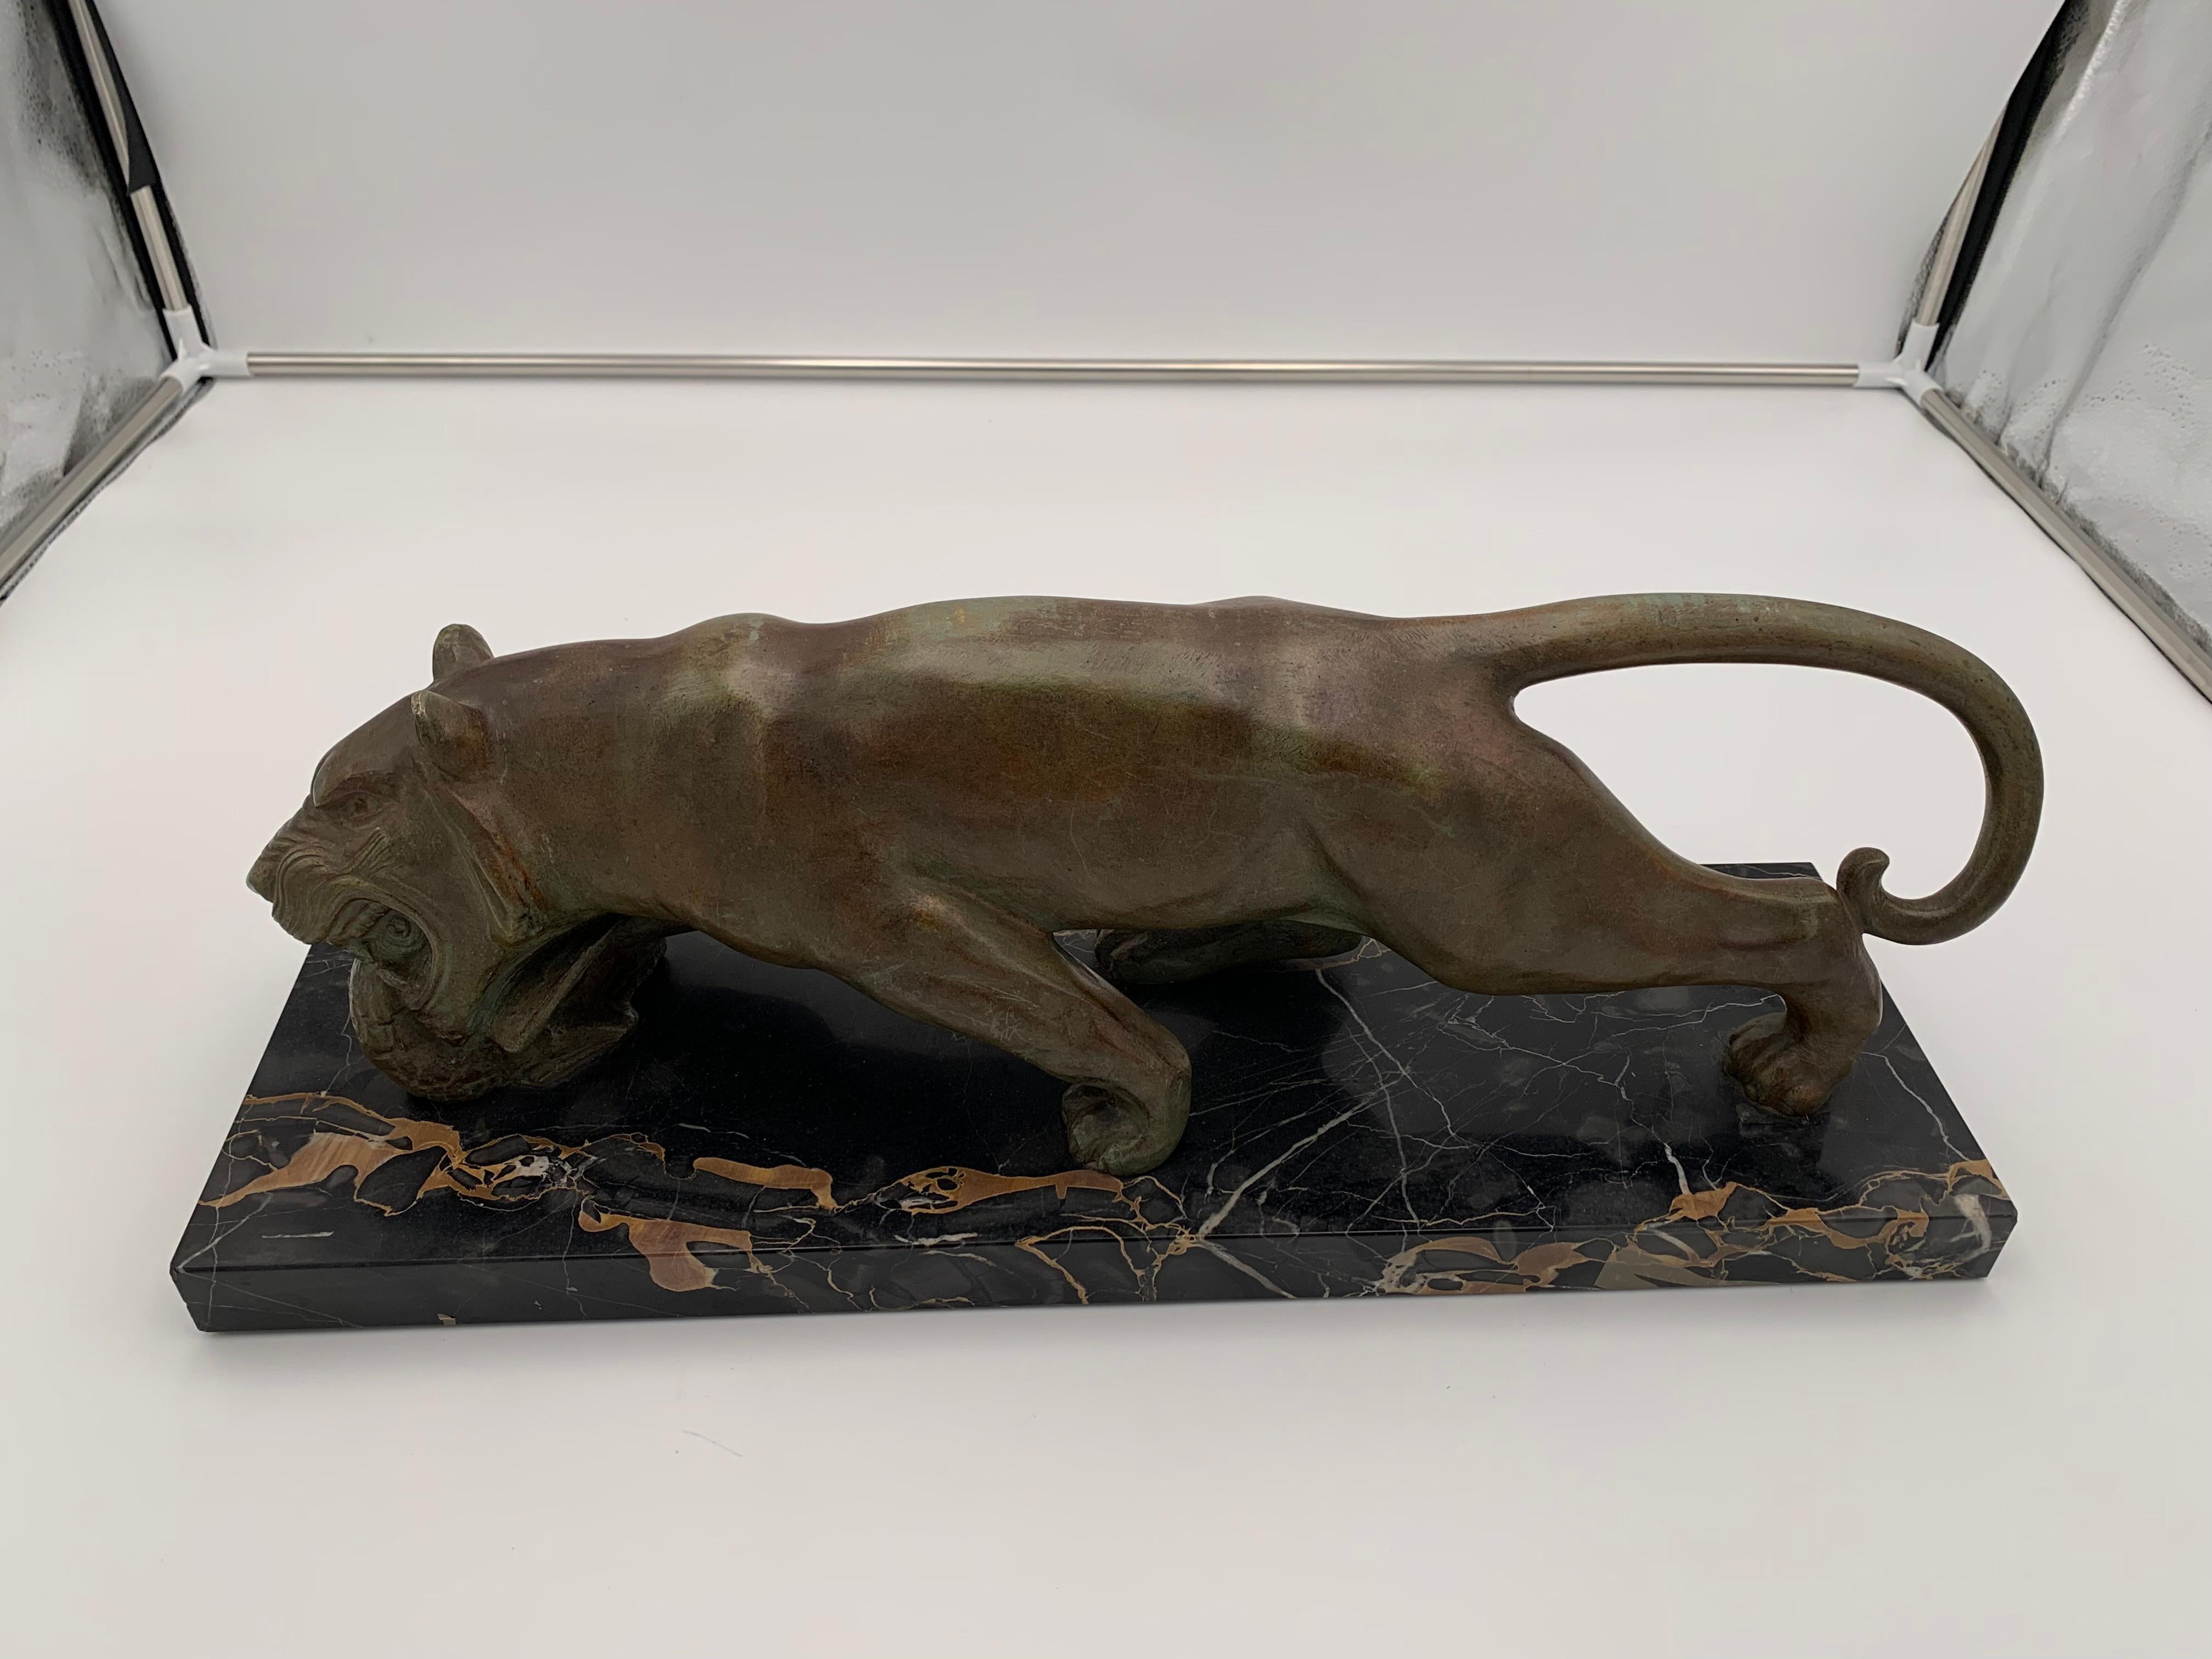 Sehr schöne, signierte Art Deco Bronze Tierskulptur eines fressenden Panthers aus Frankreich um 1930.

Signiert: 